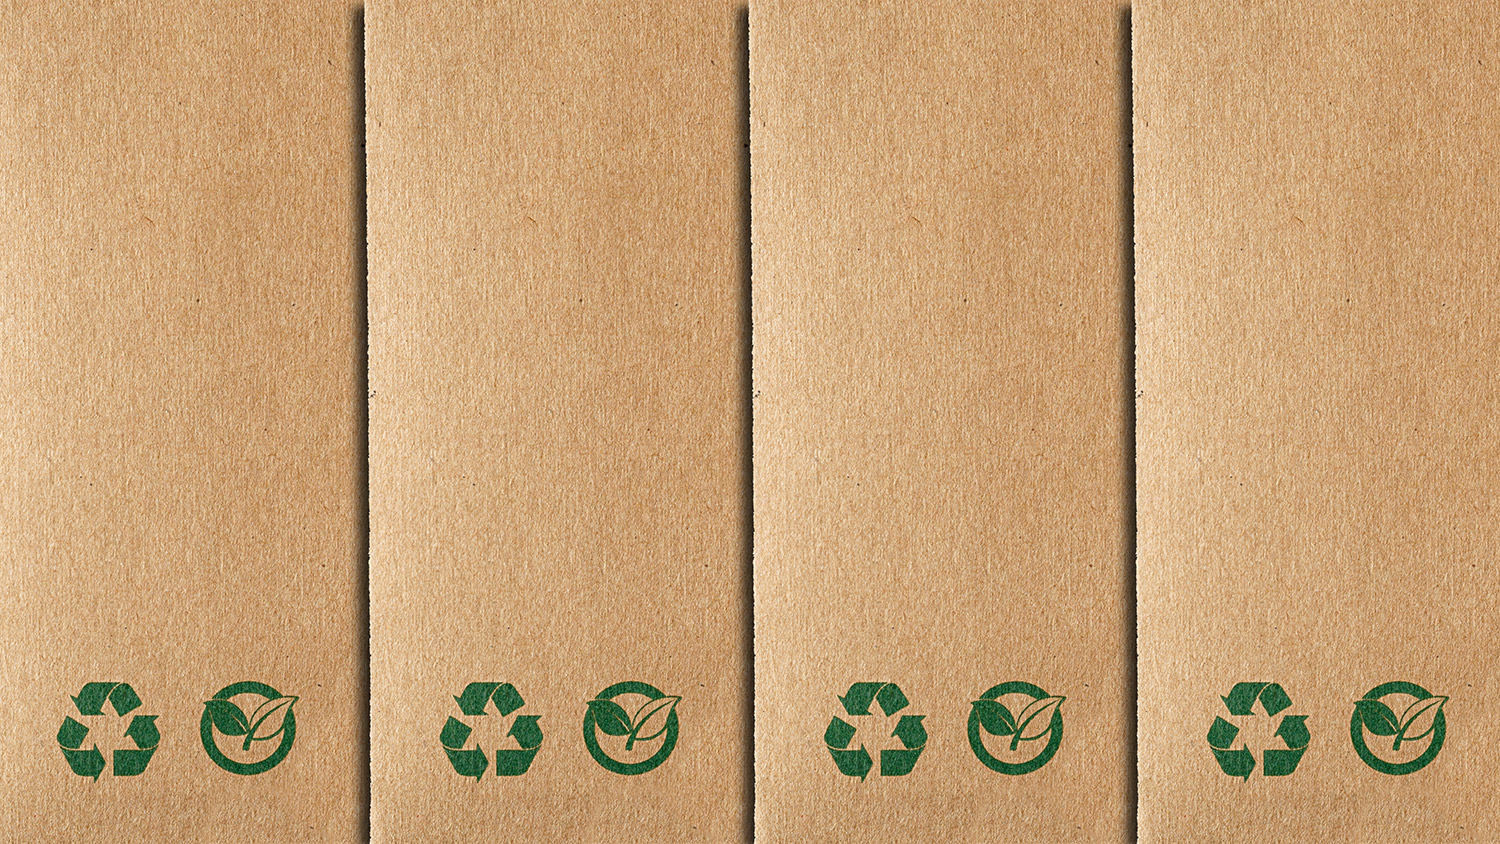 https://www.assemblies.com/wp-content/uploads/2022/10/compostable-packaging.jpg